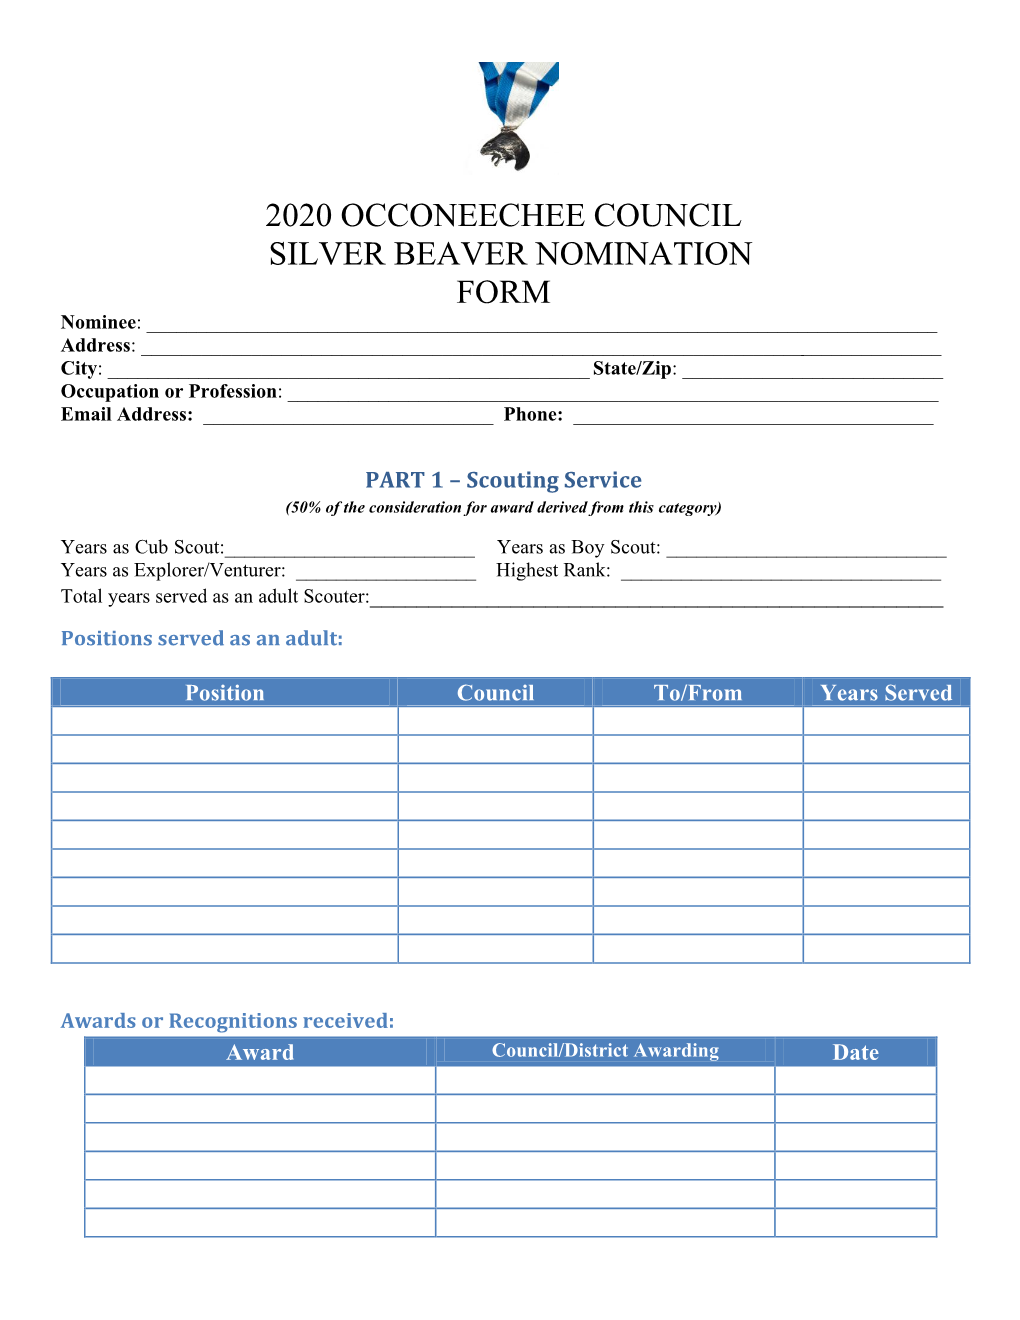 2020 Occoneechee Council Silver Beaver Nomination